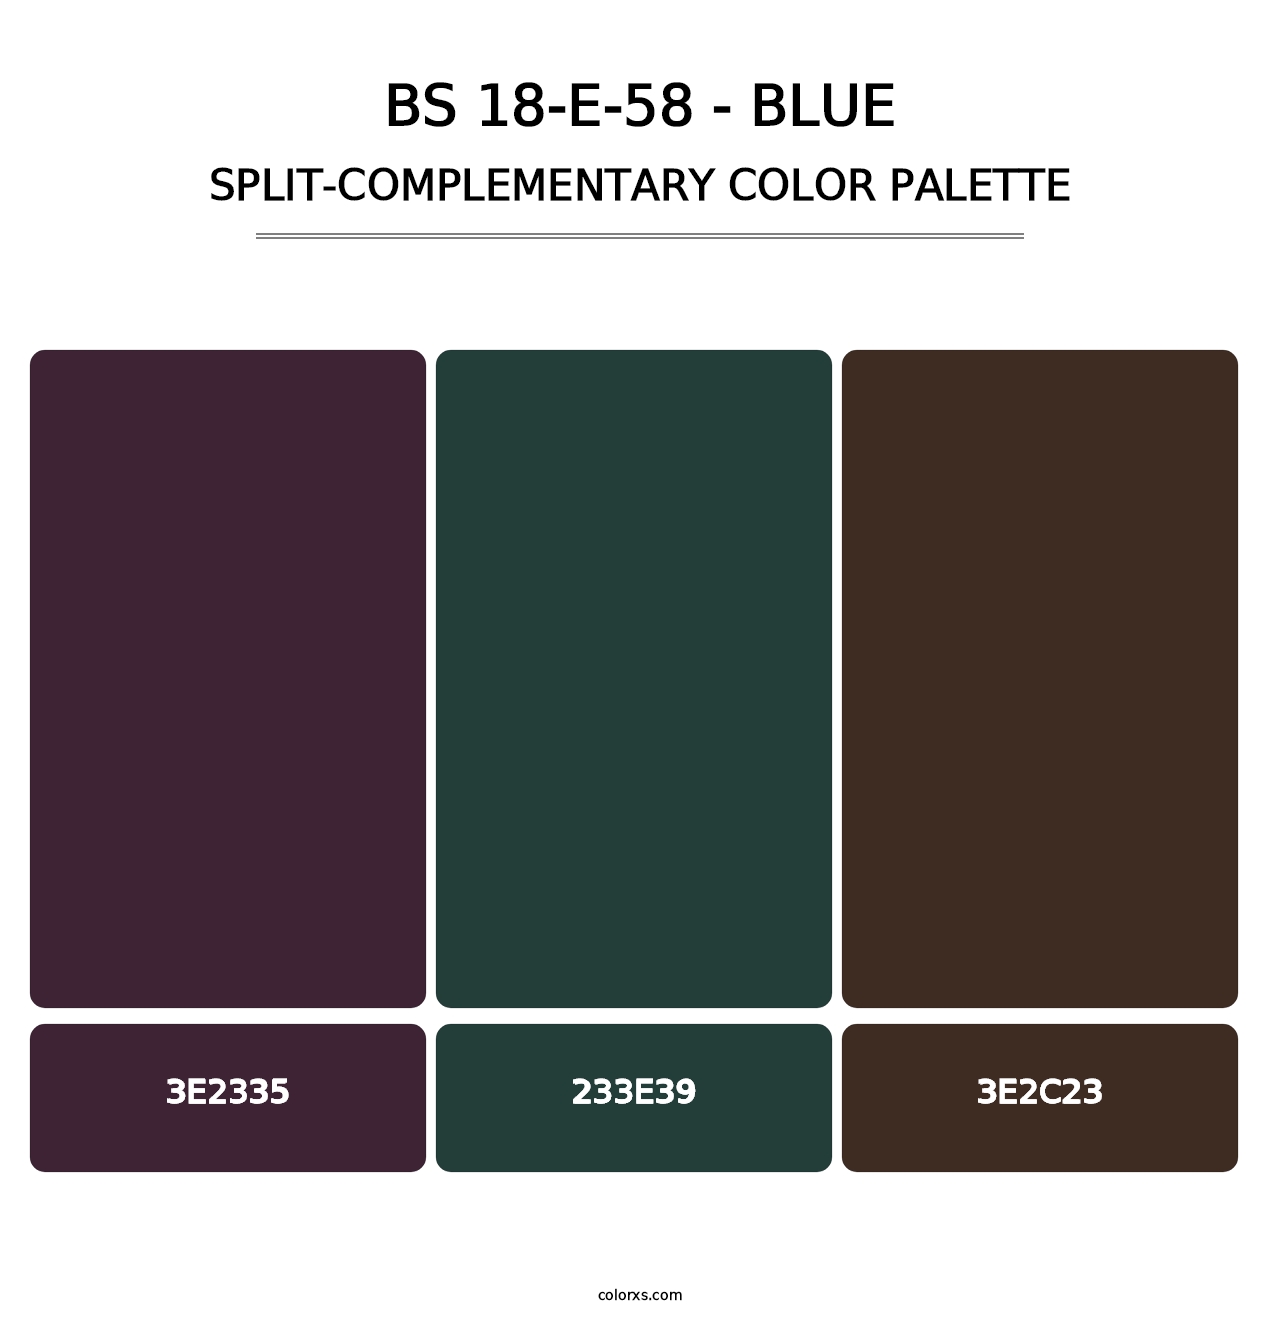 BS 18-E-58 - Blue - Split-Complementary Color Palette